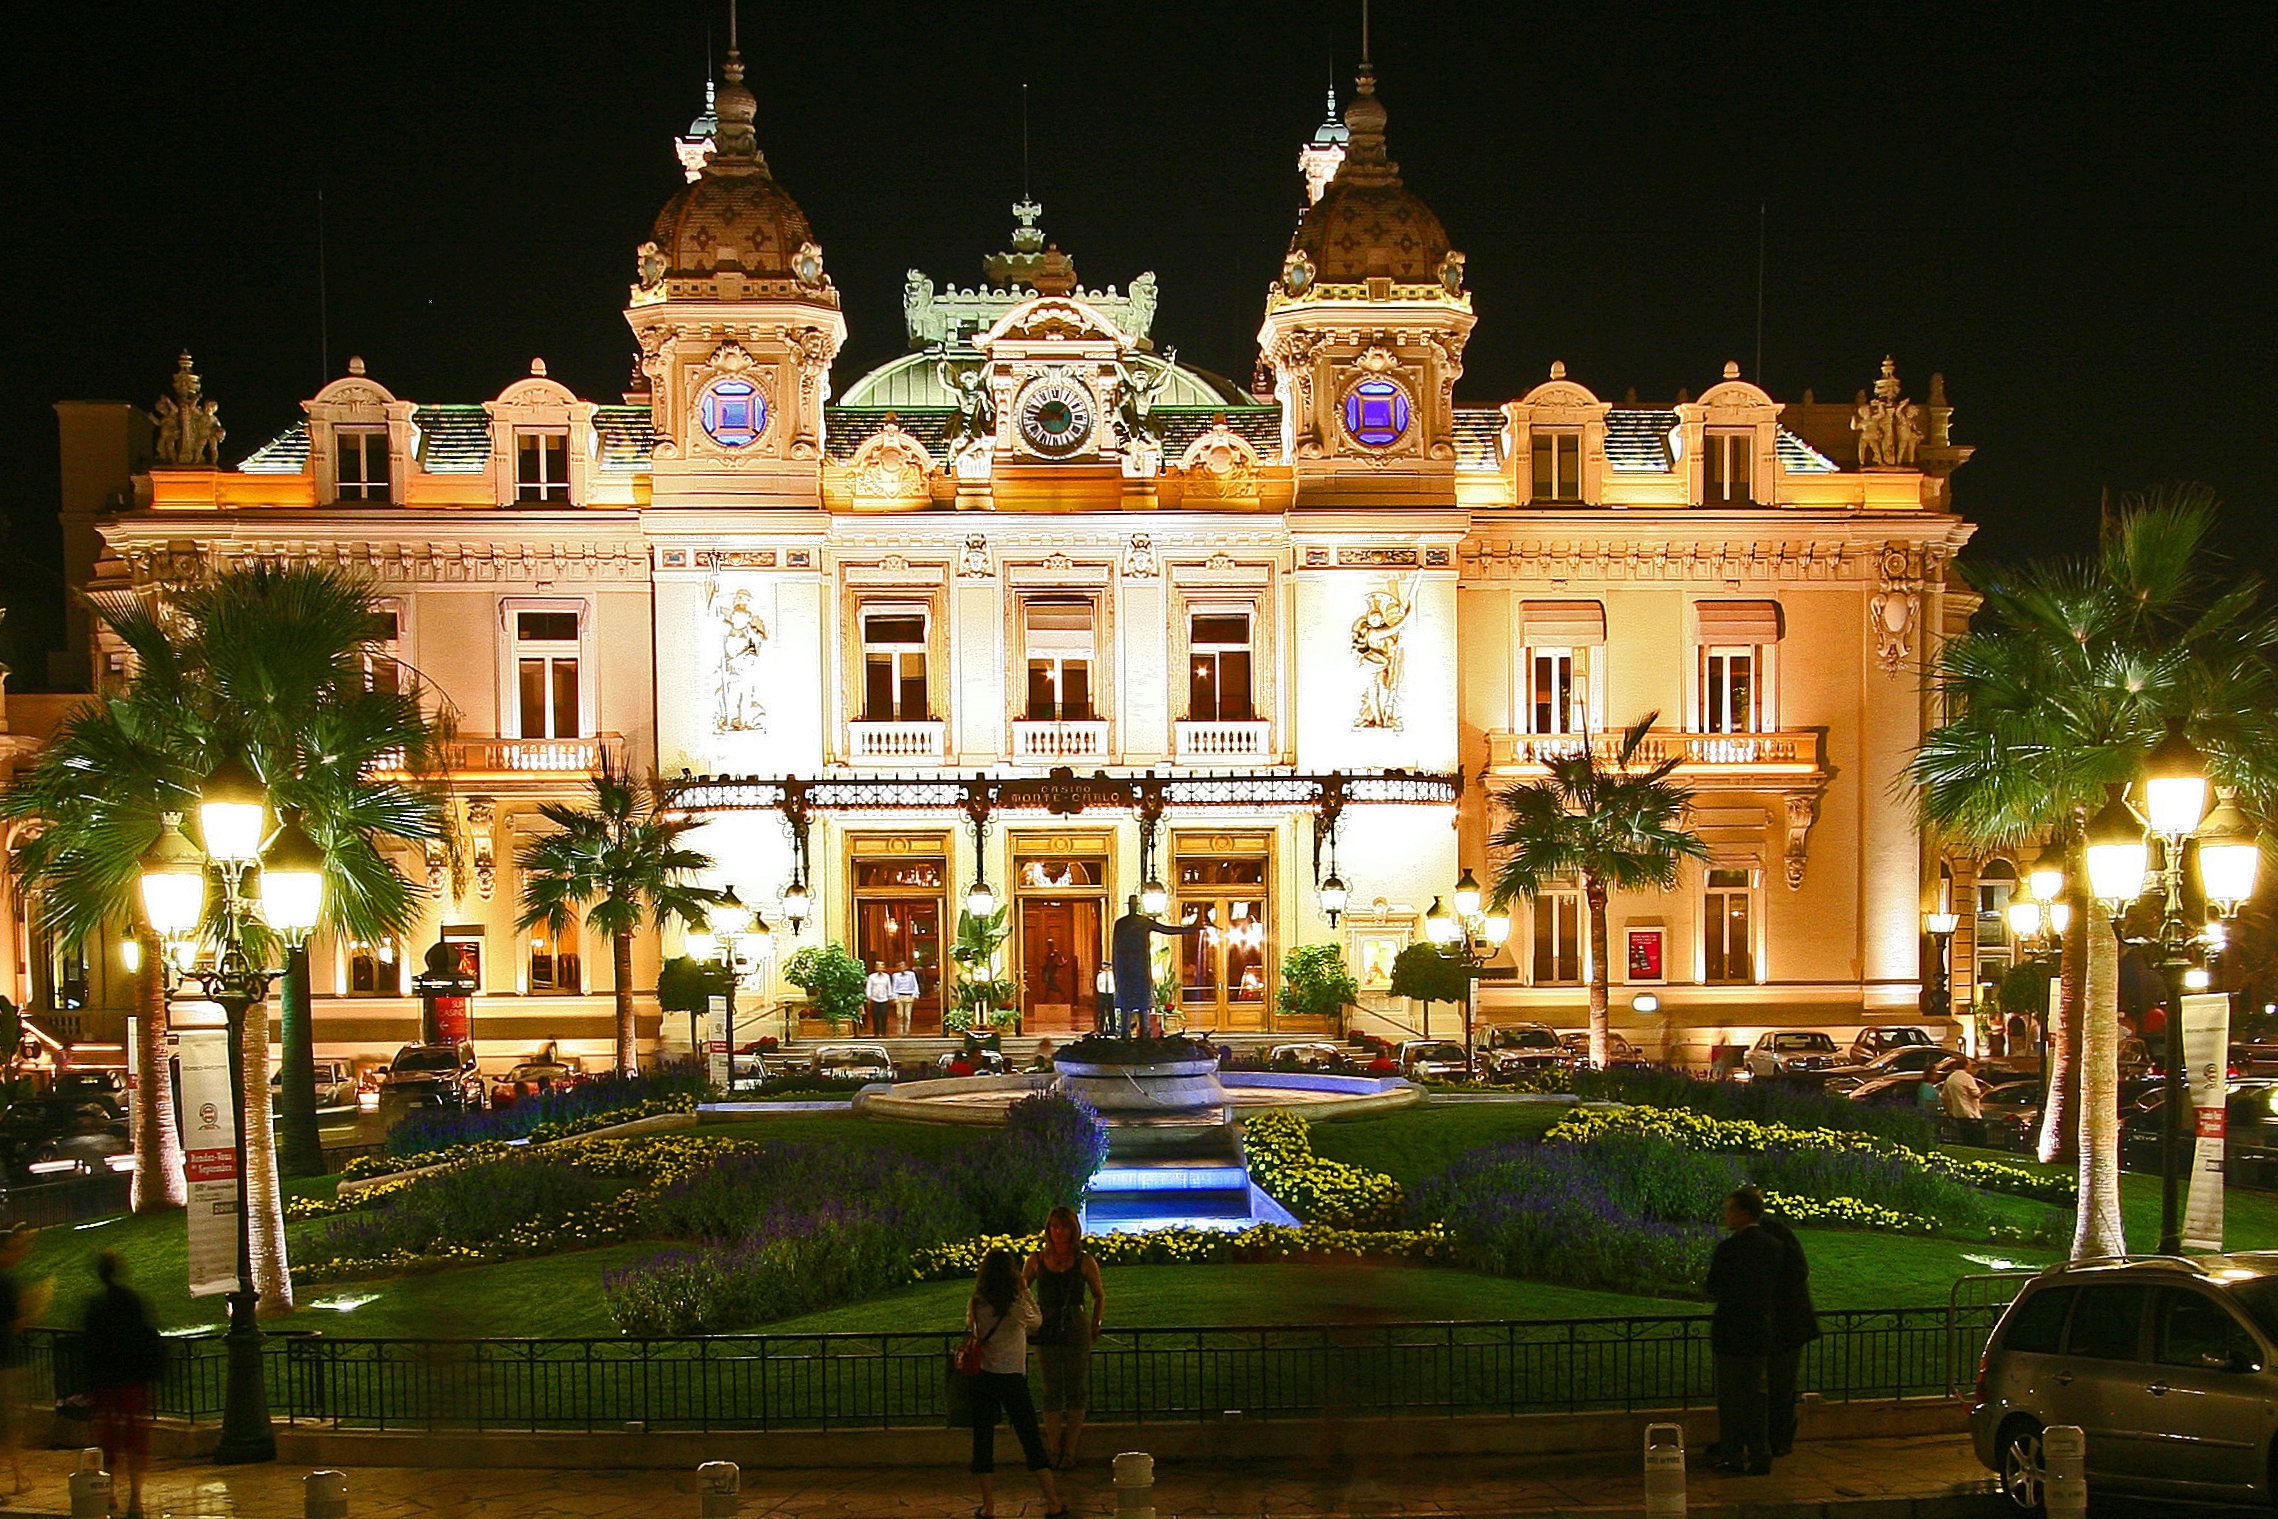 The Monte Carlo Casino in Monte Carlo